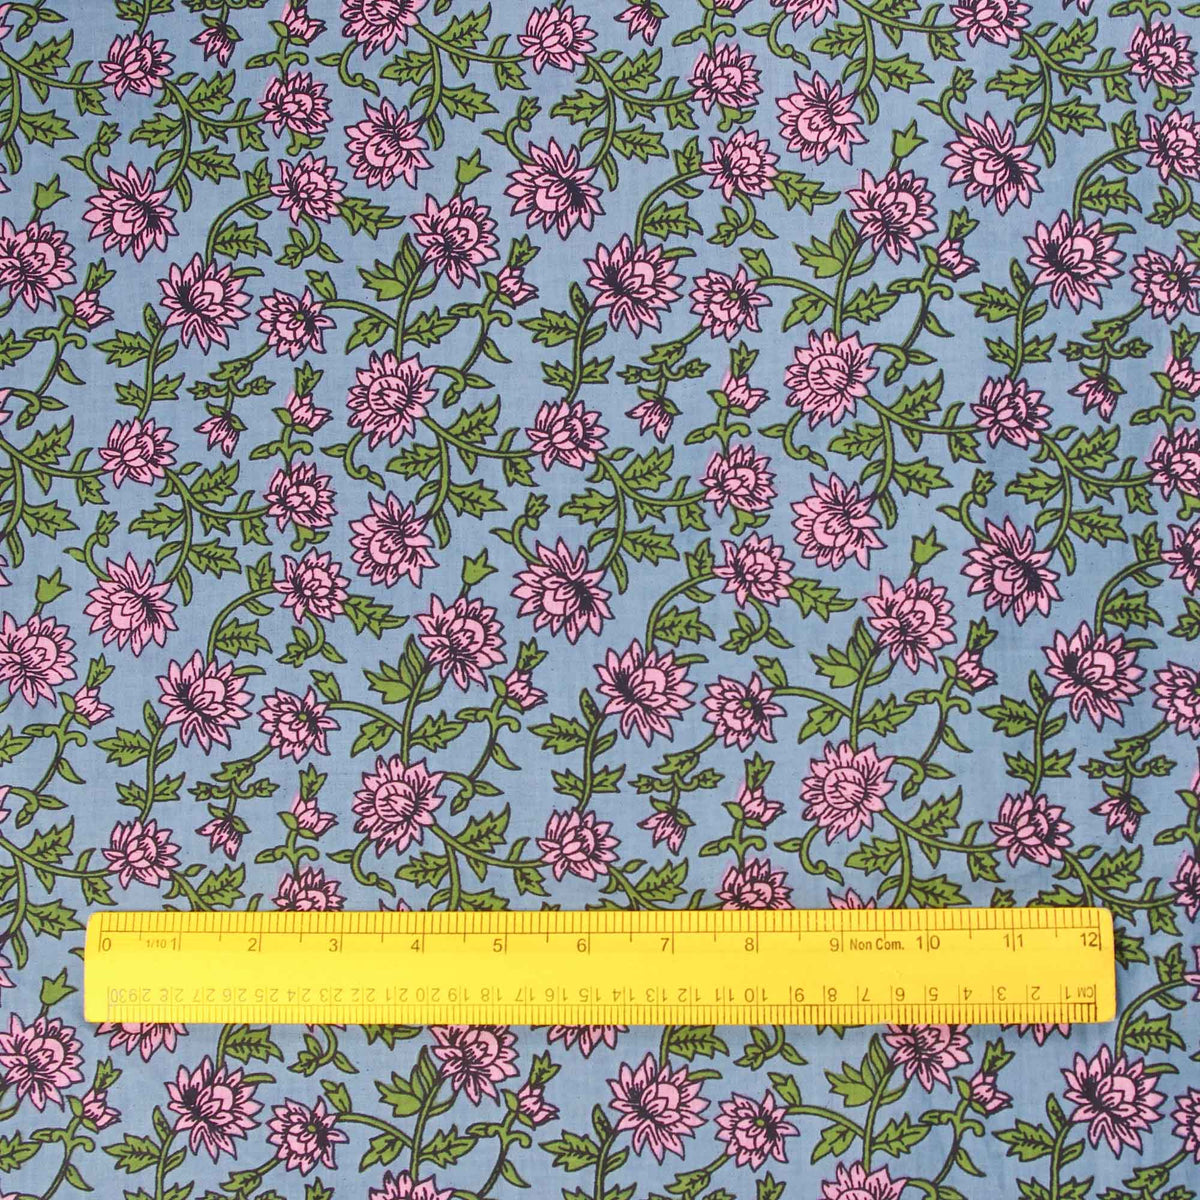 Handsiebdruck aus 100 % Baumwolle – Pink Floral Jaal auf Blau (Design 369)